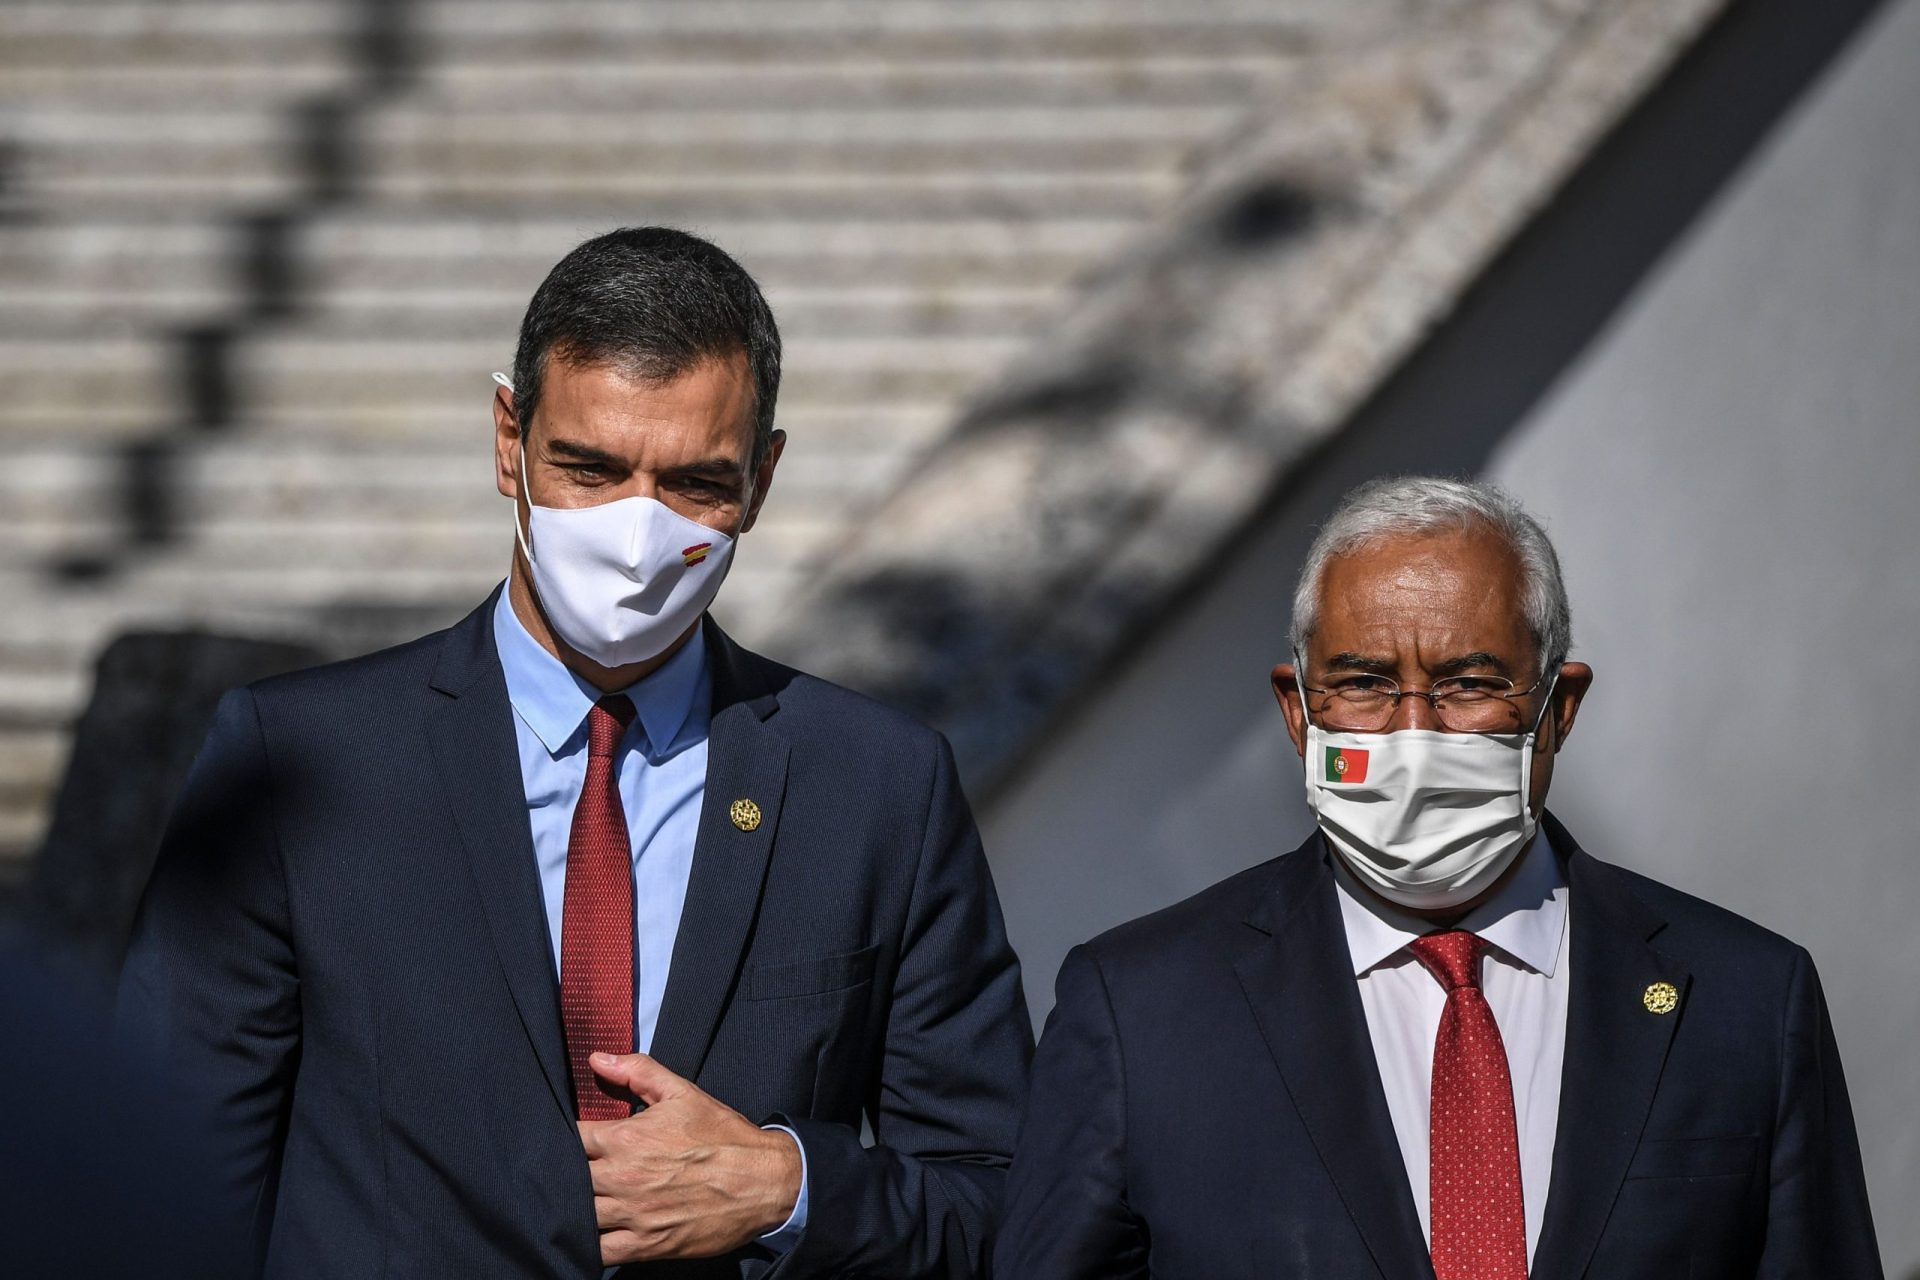 Costa nega regressa ao confinamento no dia em que Portugal regista mais novos casos de covid-19